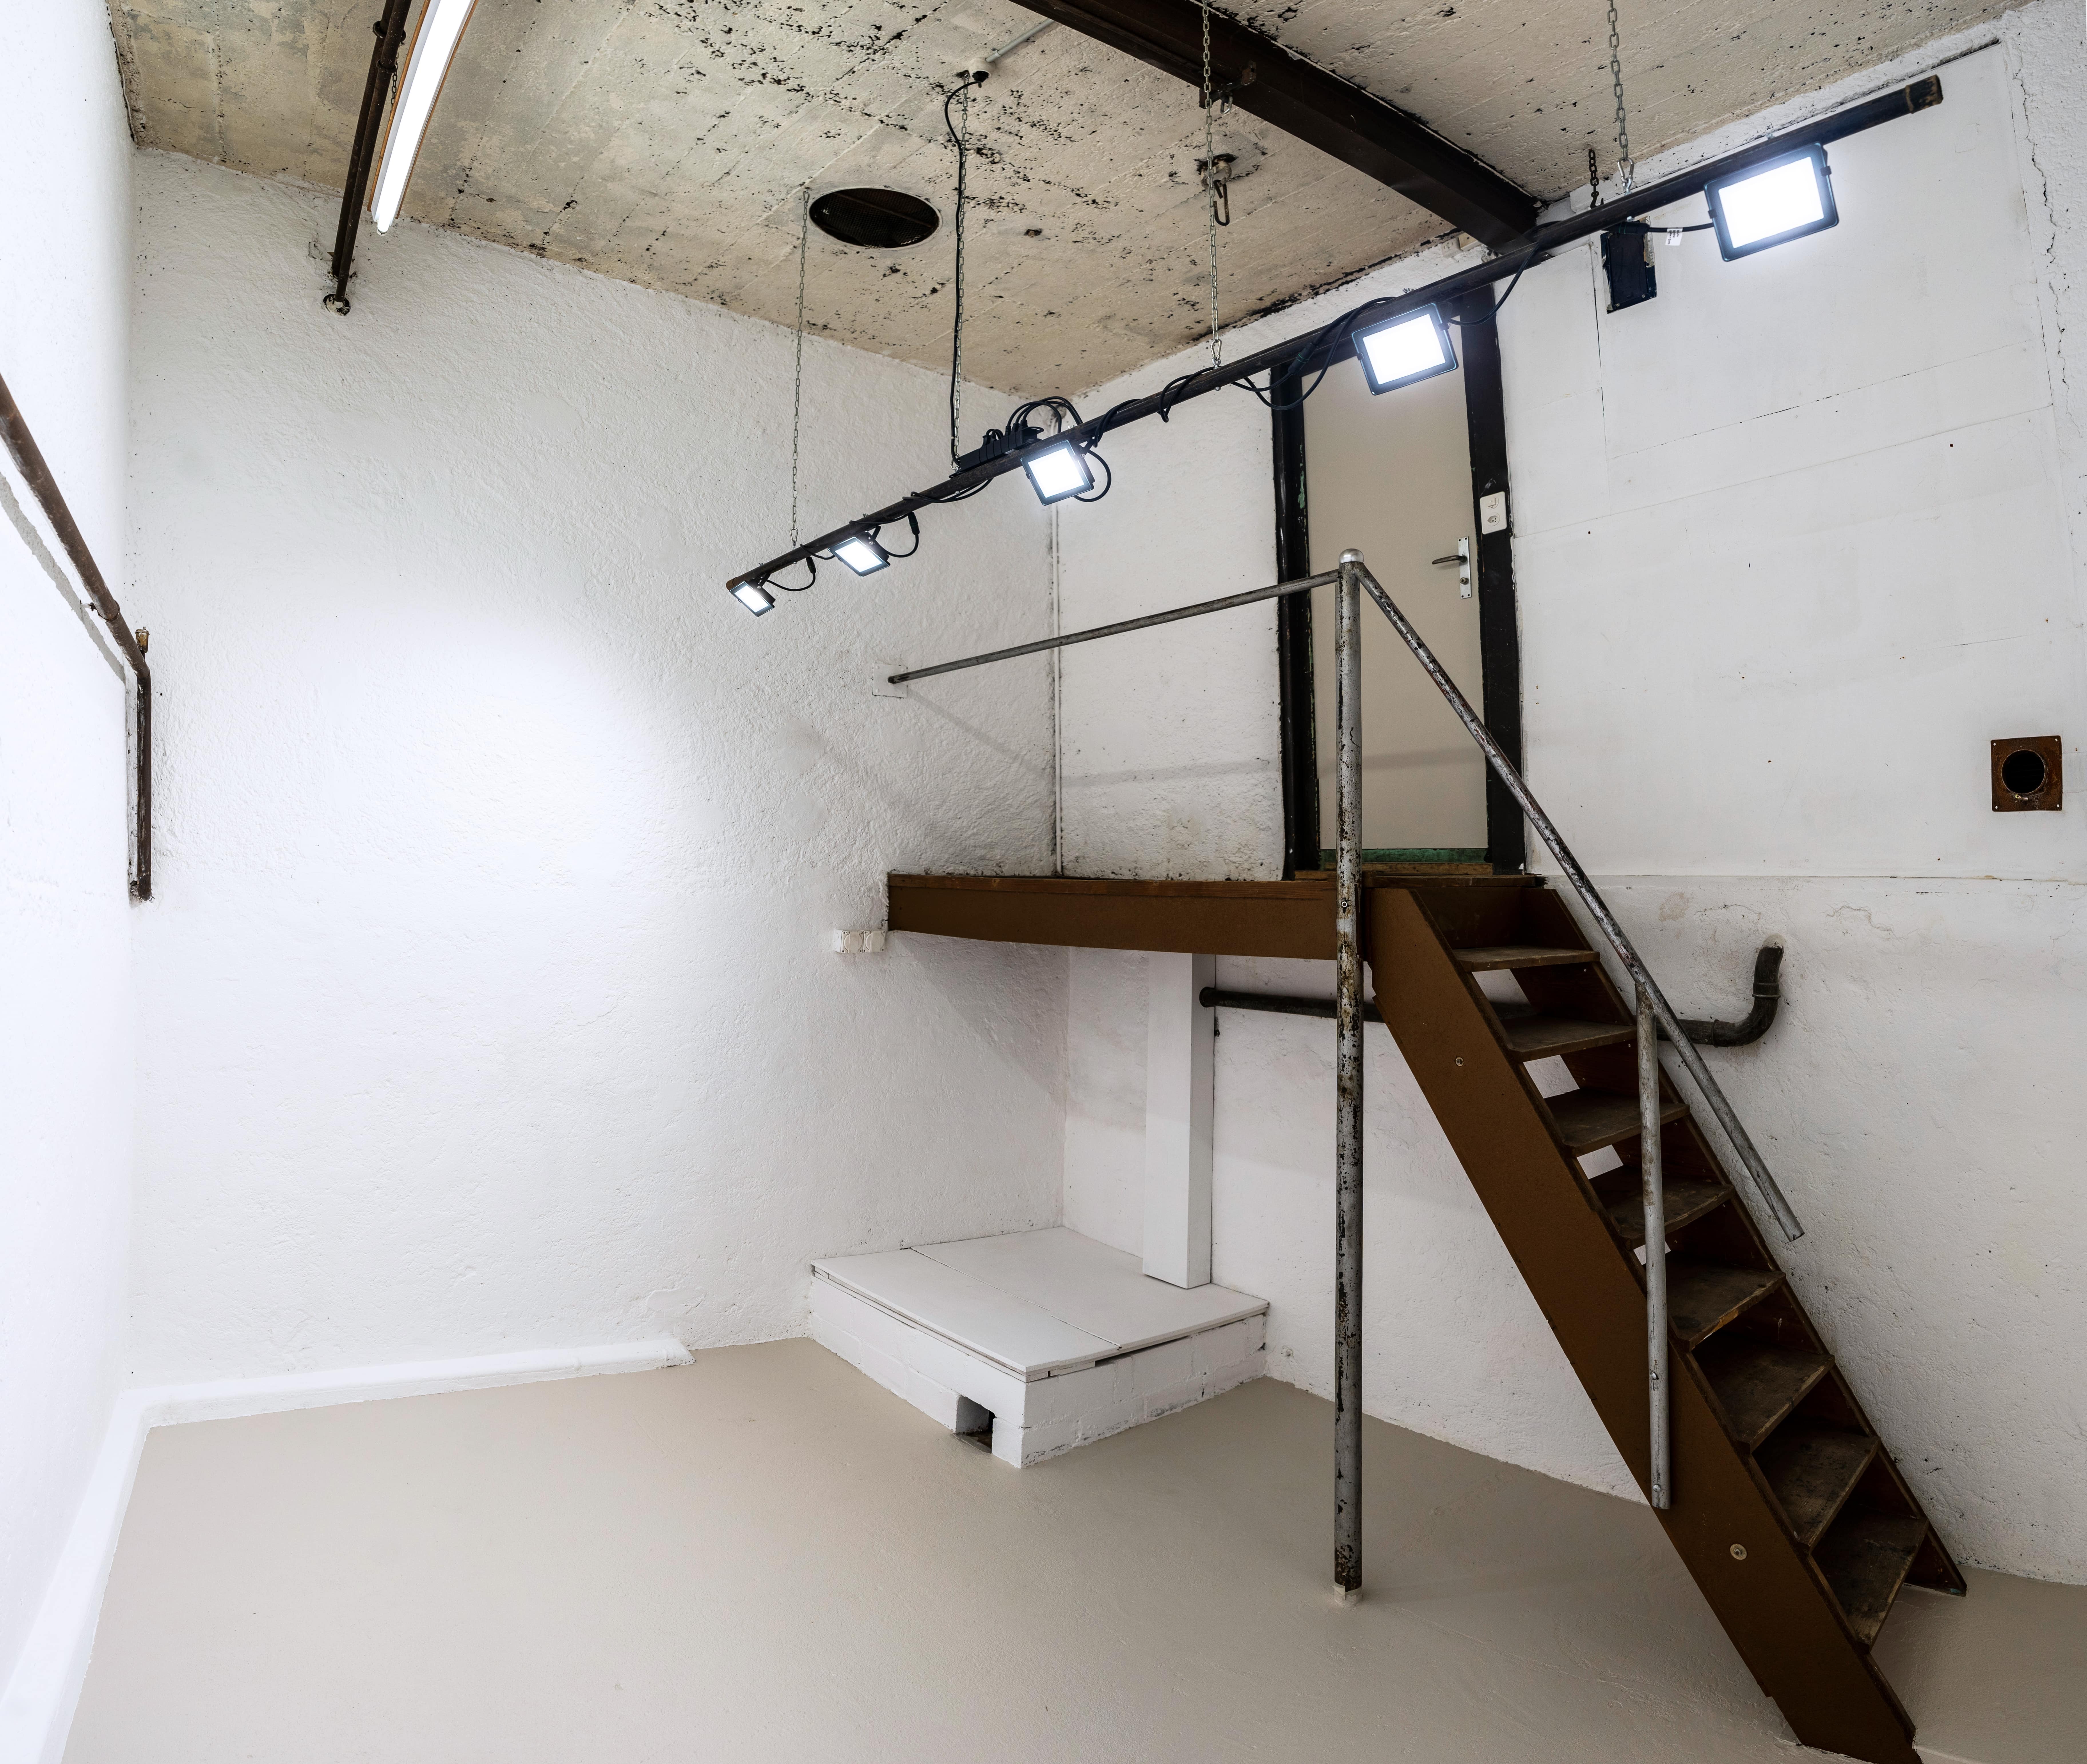 Ein hoher weisser Raum mit hellem Licht, einer Treppe und verschiedenen Eisenrohren. 